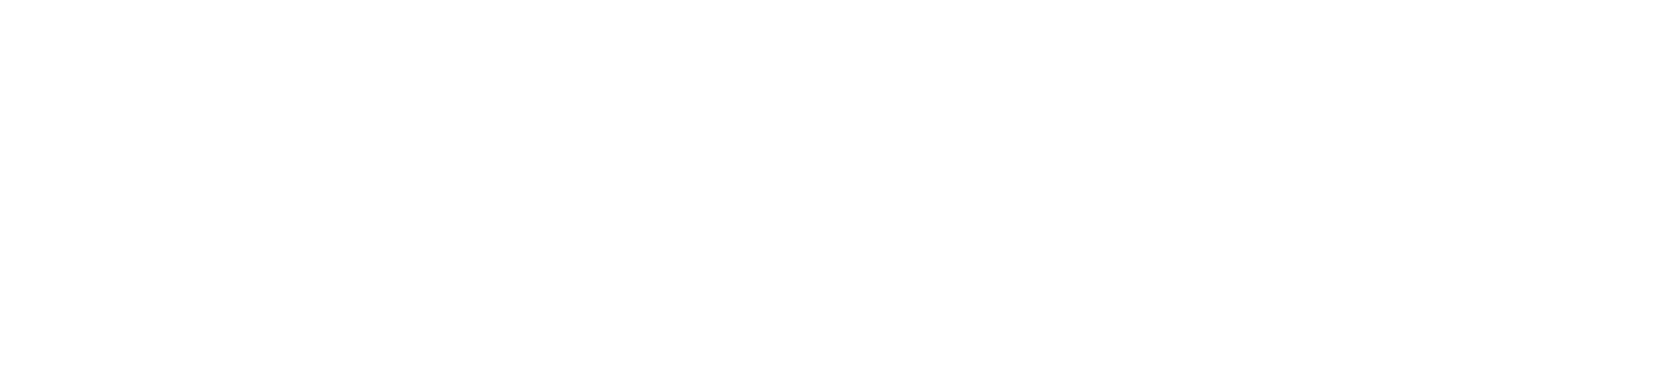 Торцевая заглушка Flexy TOREC GIPS KONTUR 01 для профилей Flexy: размер, вид, применение, способ монтажа в Беларуси (РБ)